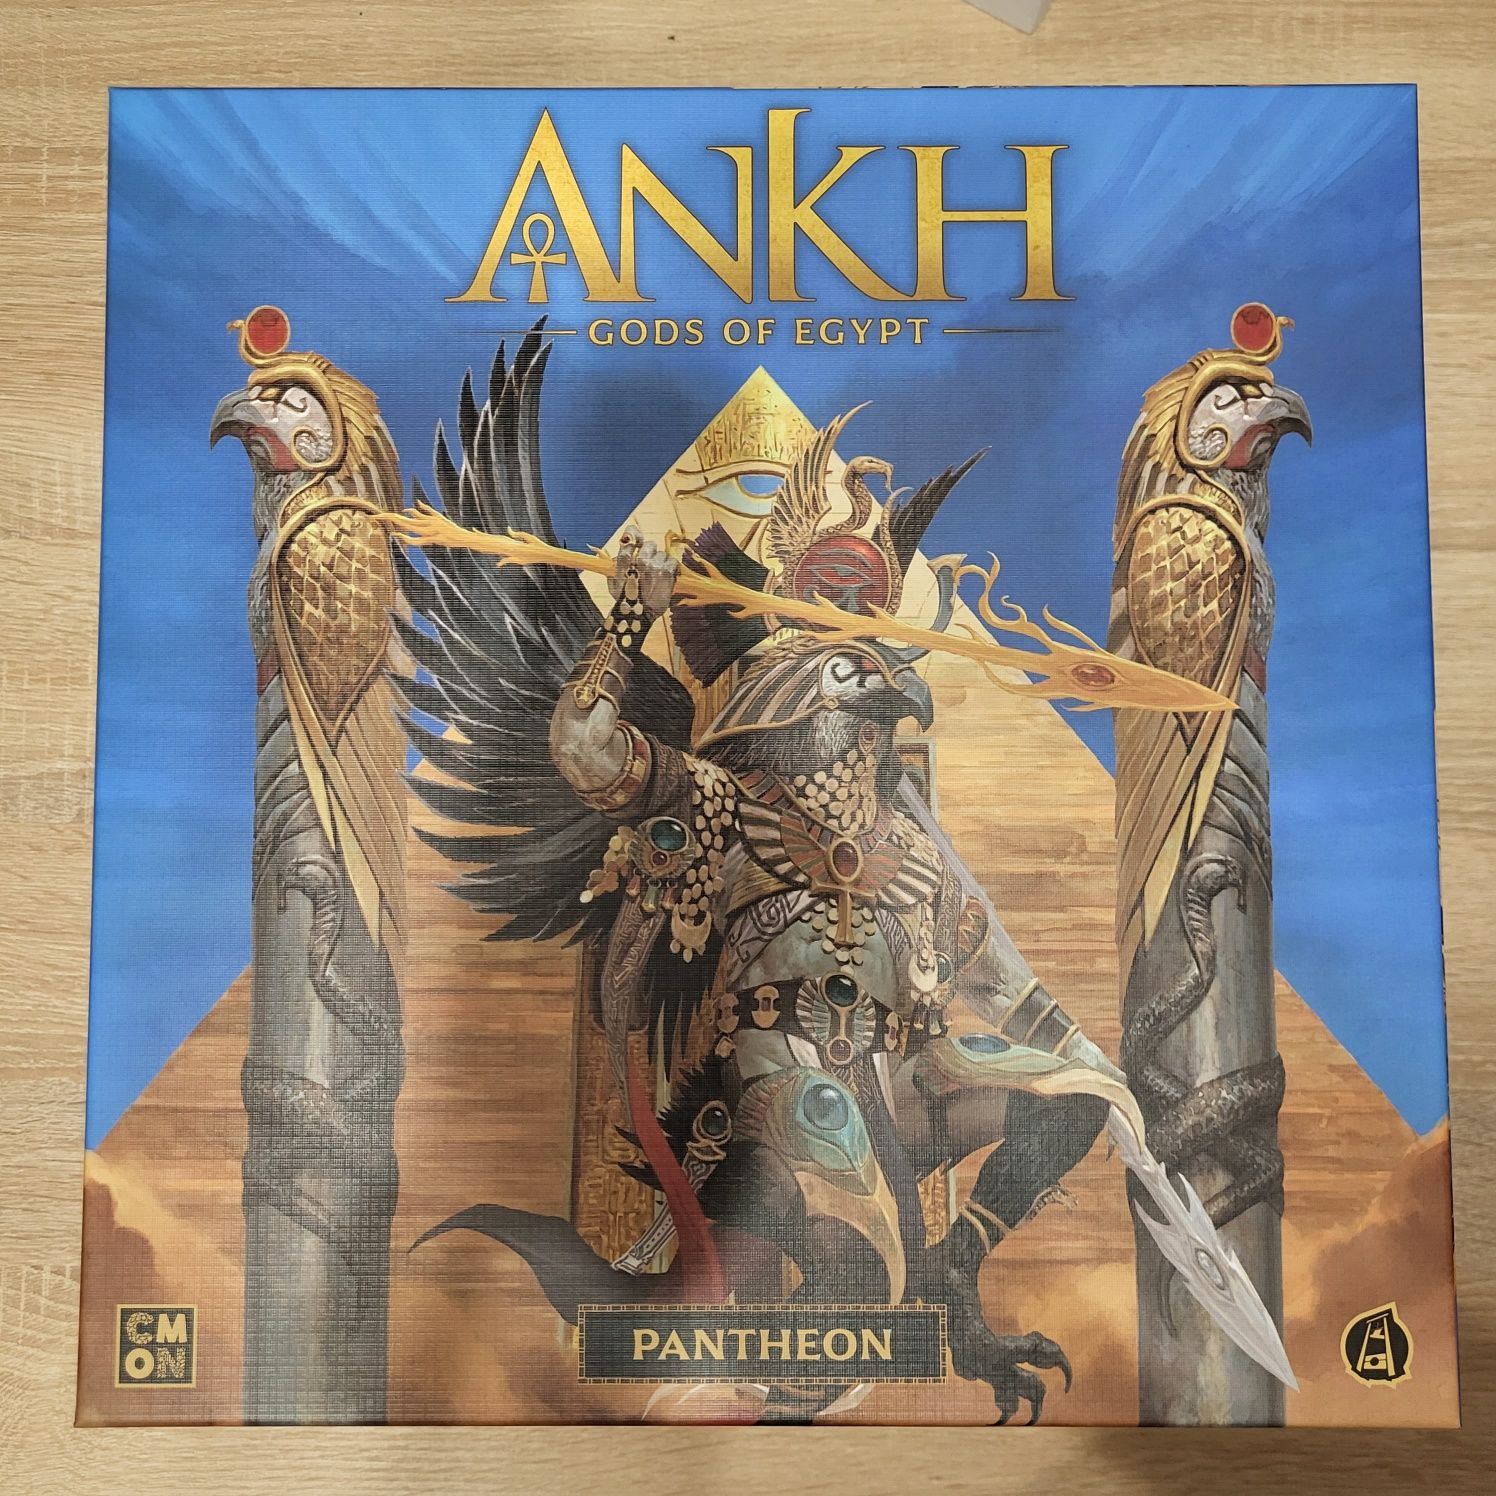 Ankh Gods of Egypt + Pharaoh + Pantheon + Guardians Set